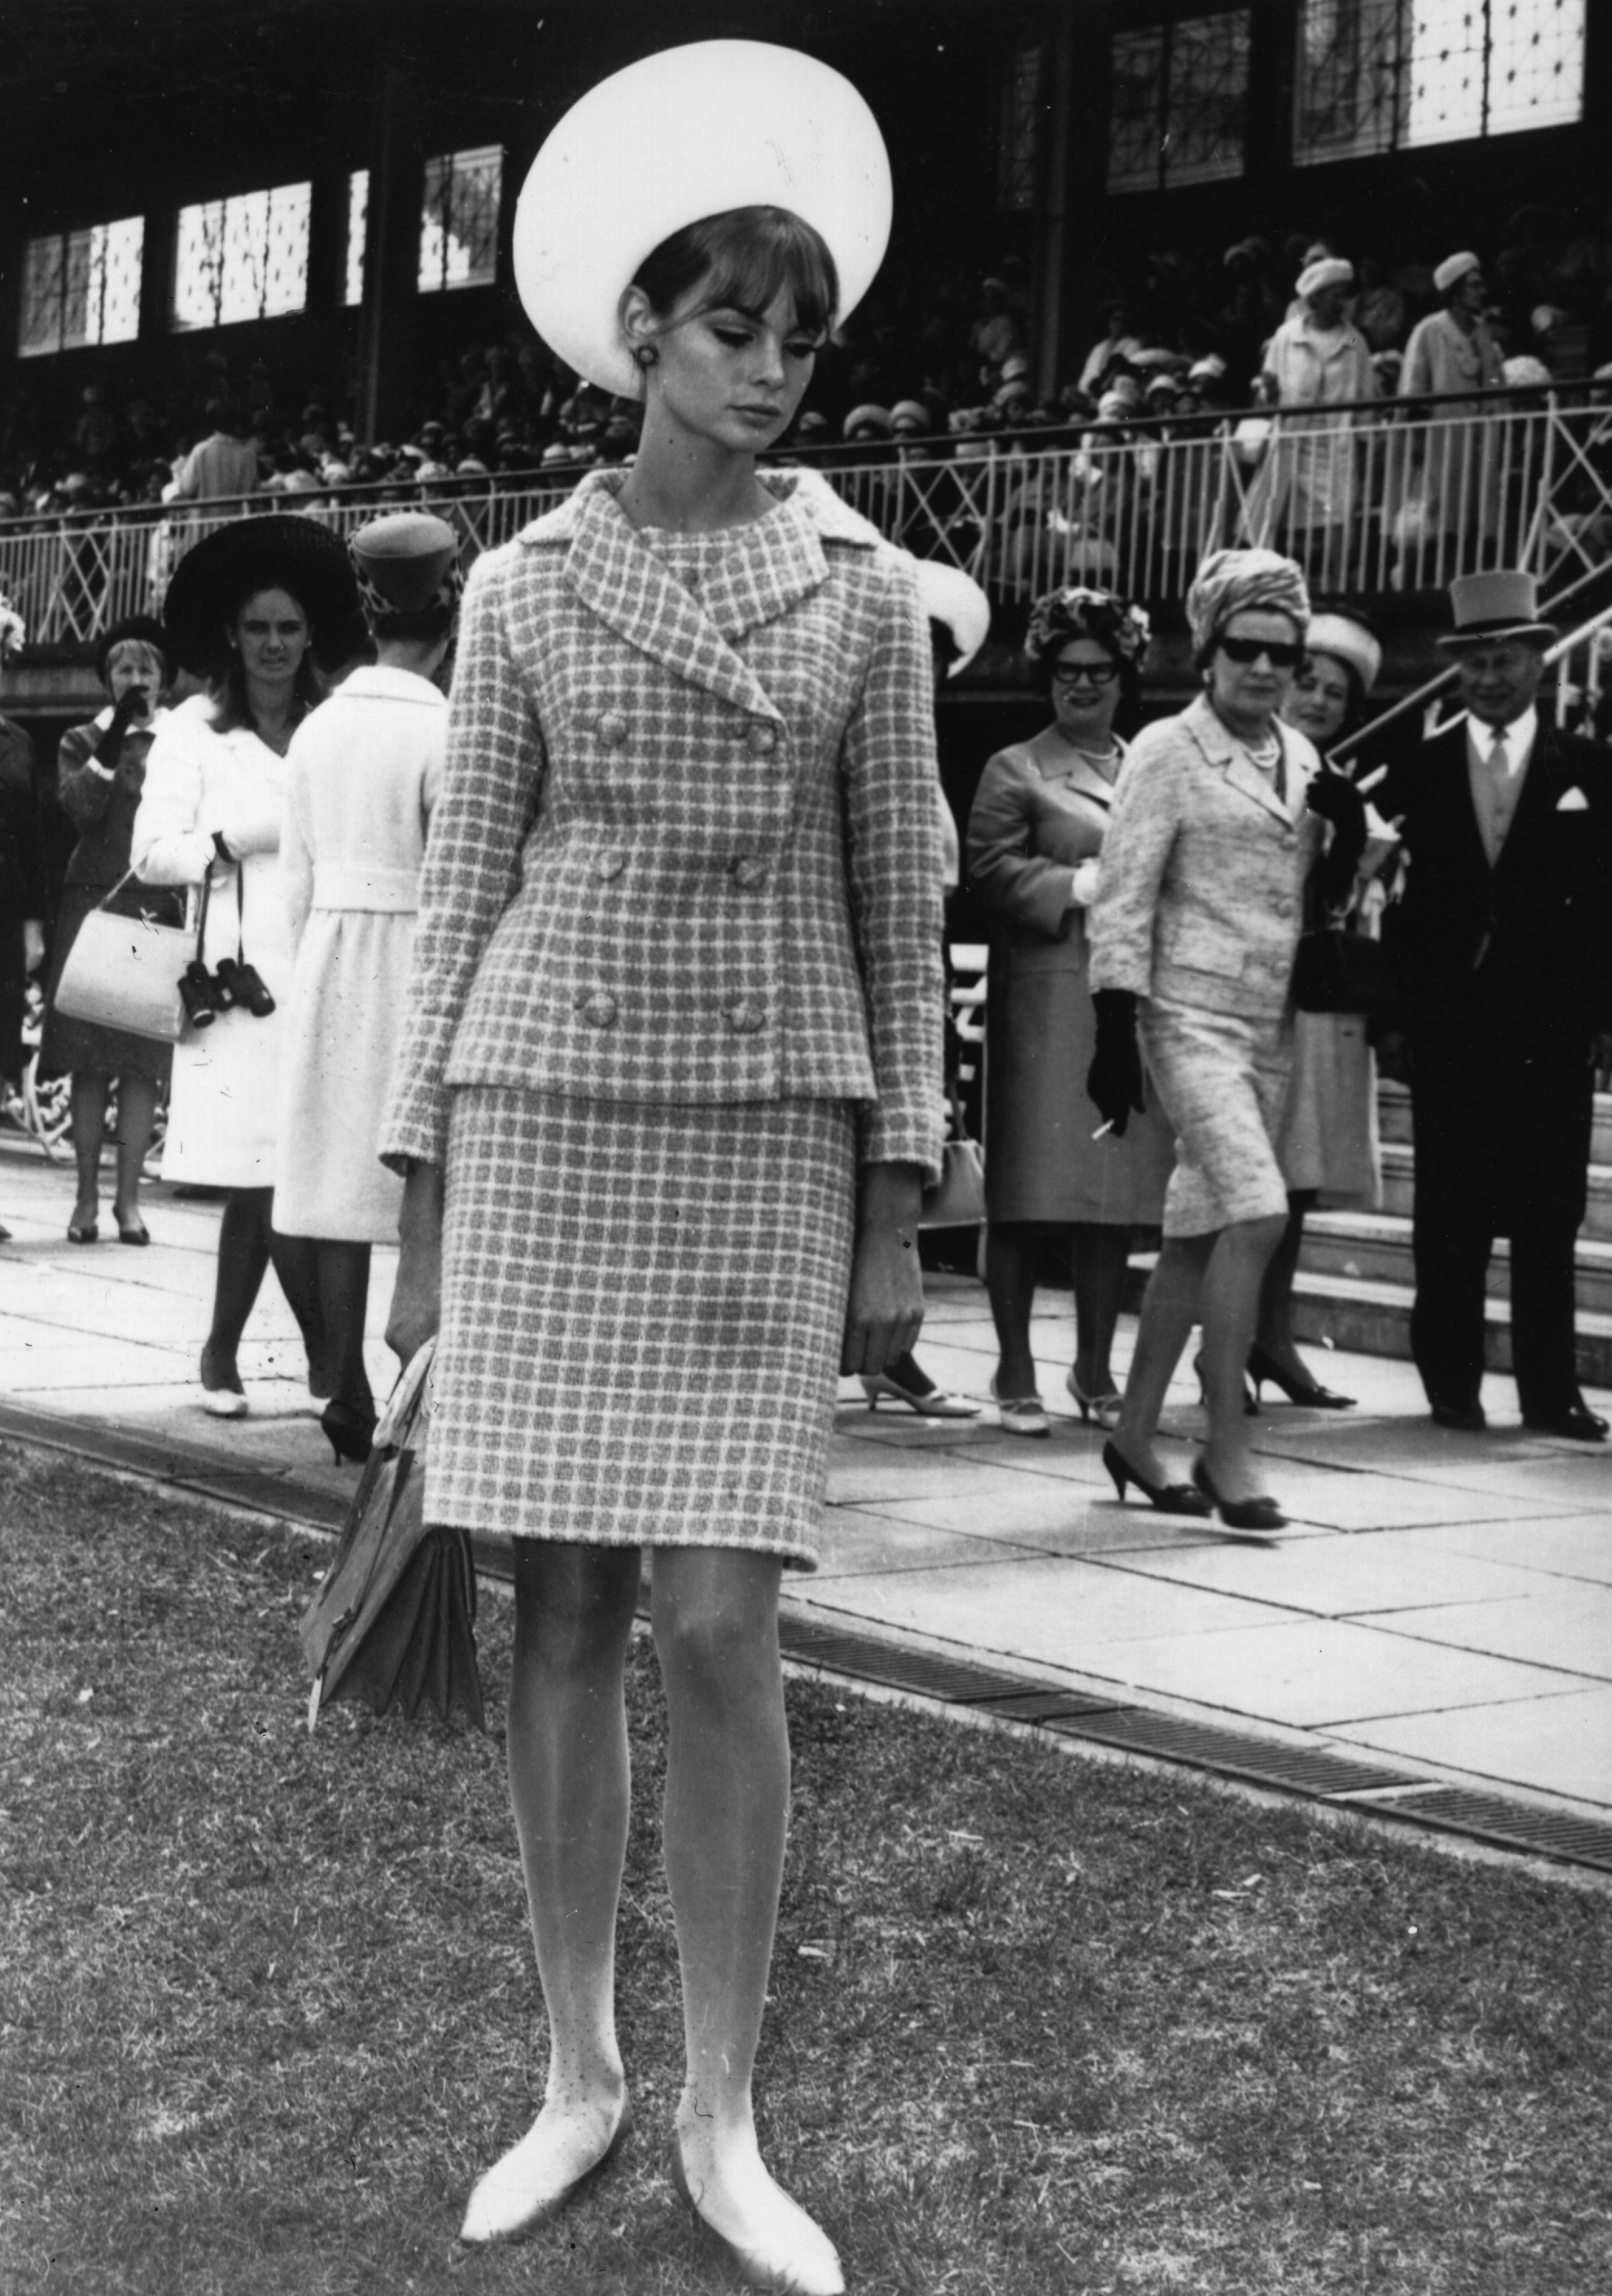 През 60-те в модата започват да се появяват тенденции, които през предните десетилетия са били почти невъзможни. Късите поли започват да навлизат все повече, прочутитет чарлстони са пък истински хит сред мъжете и жените от почти всички възрасти.